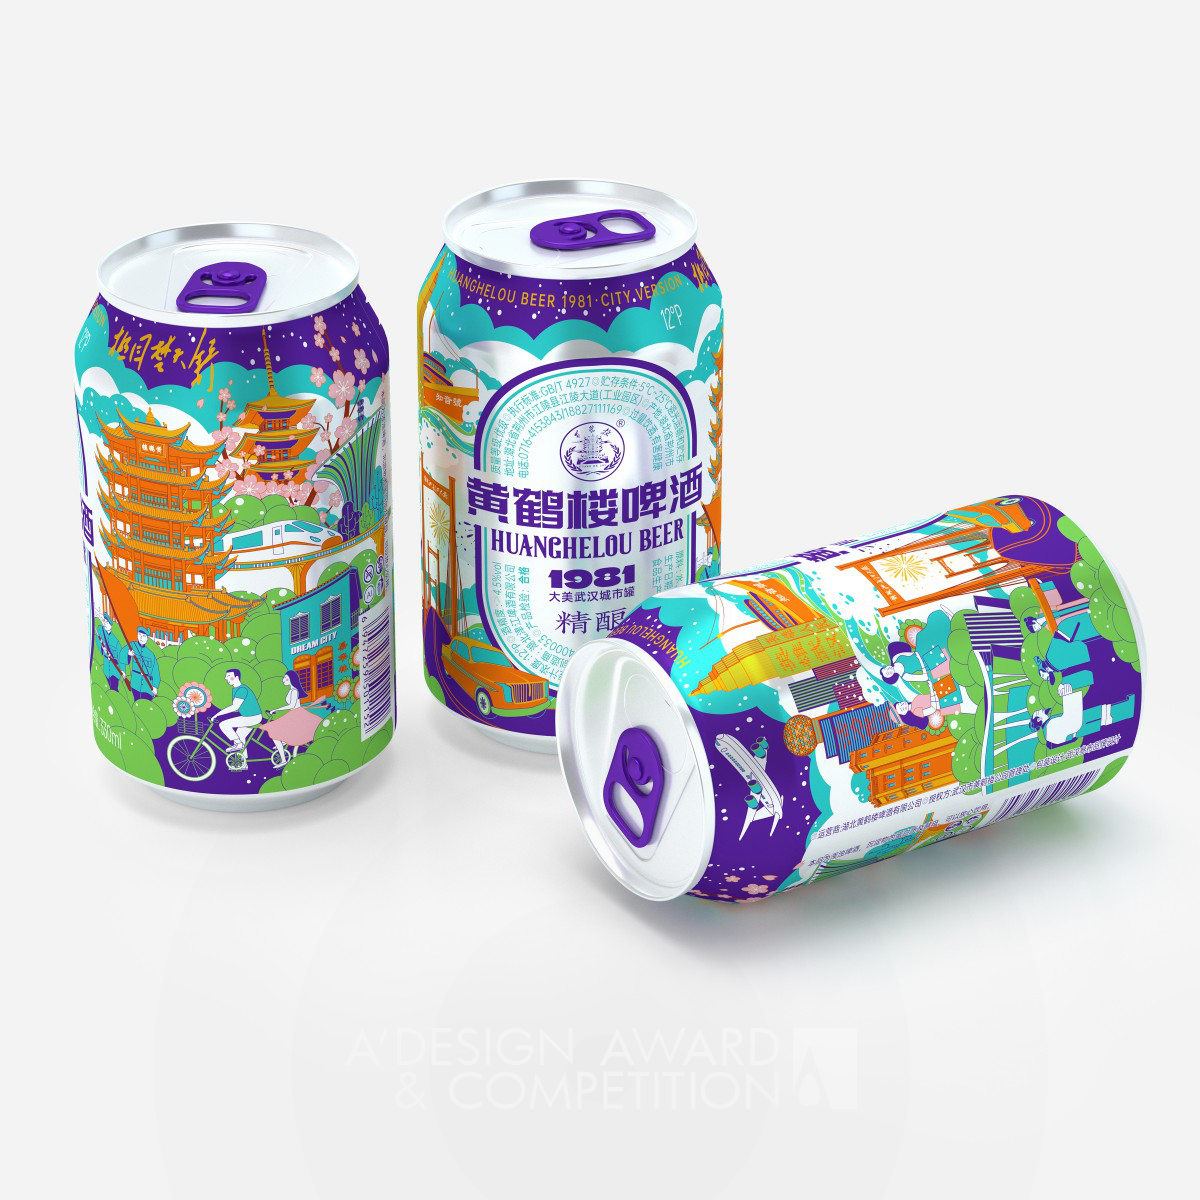 Huanghelou Beer Packaging